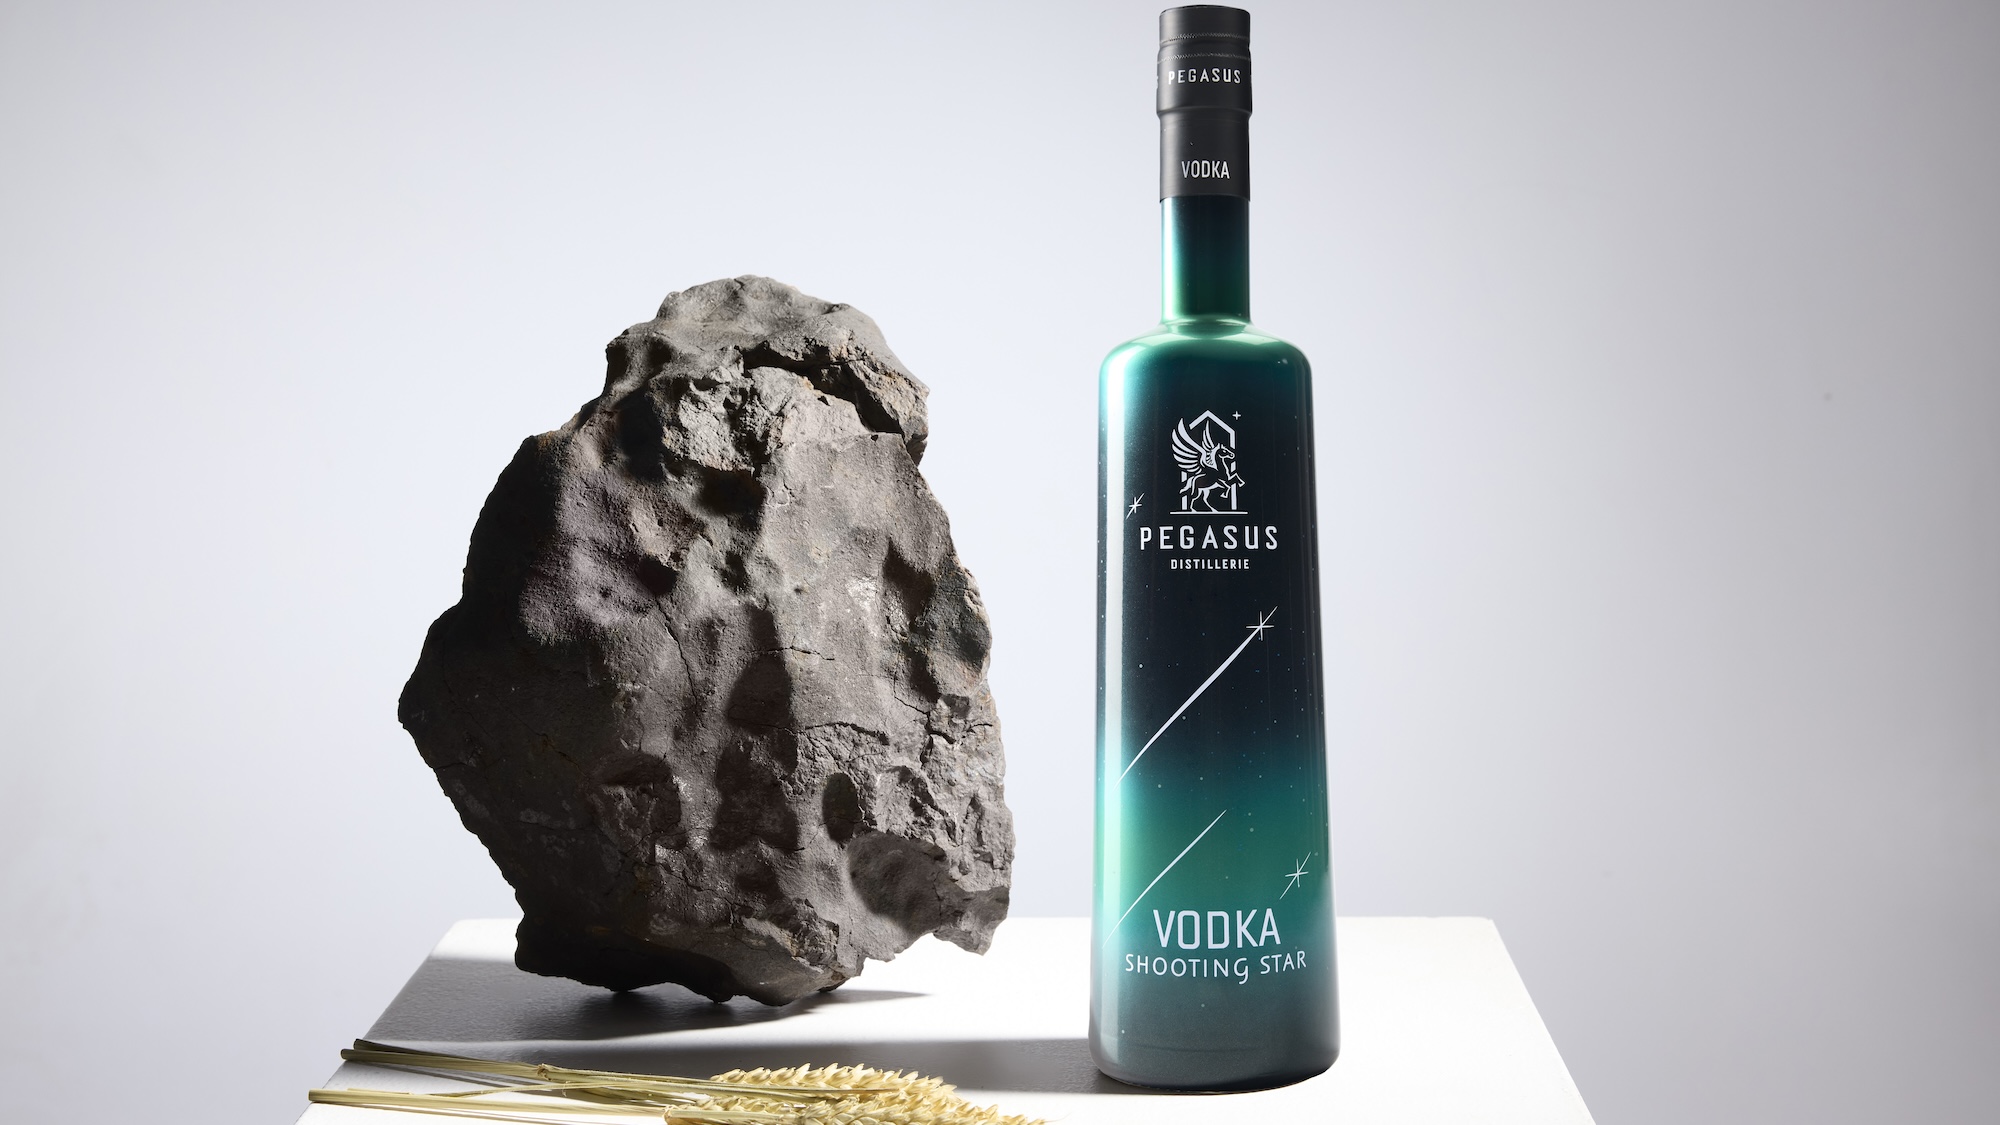 Pegasus Shooting Star Vodka promo art next to meteorite